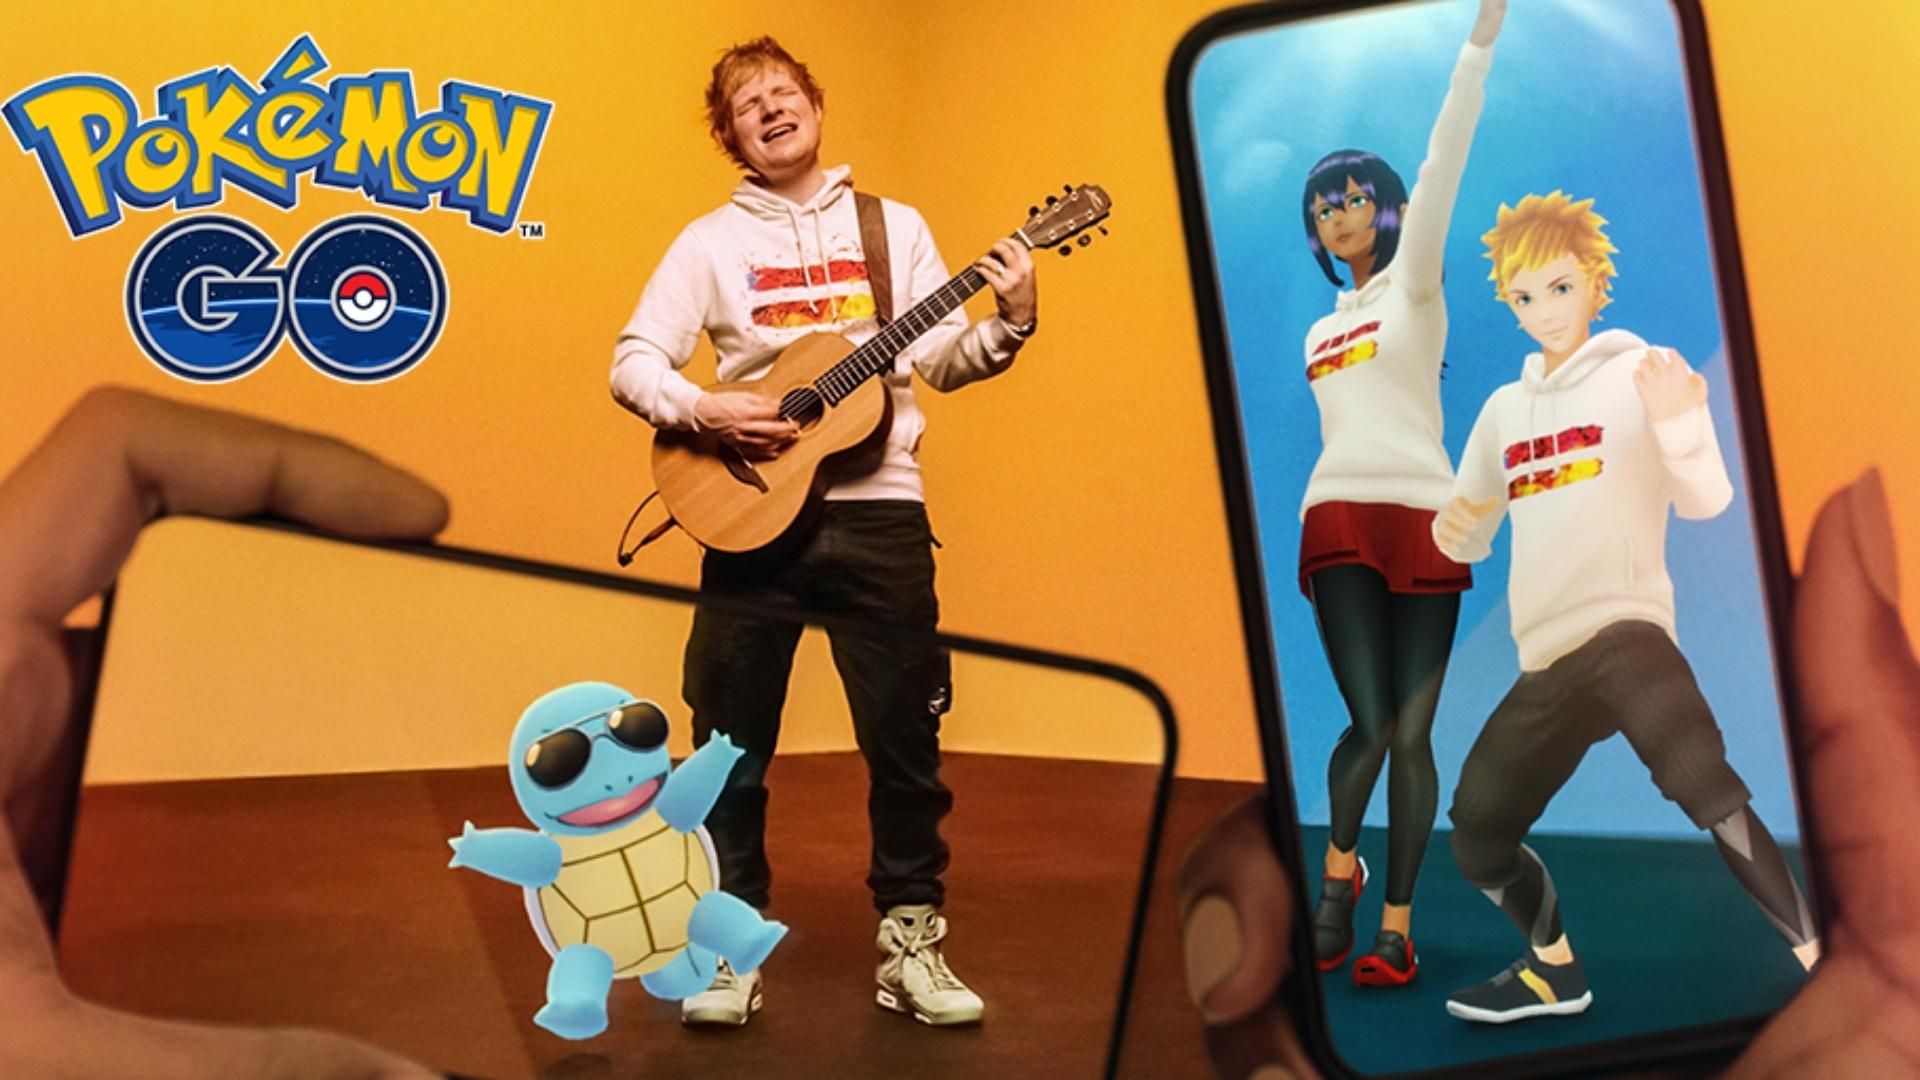 Pokémon Go Ed Sheeran Concert